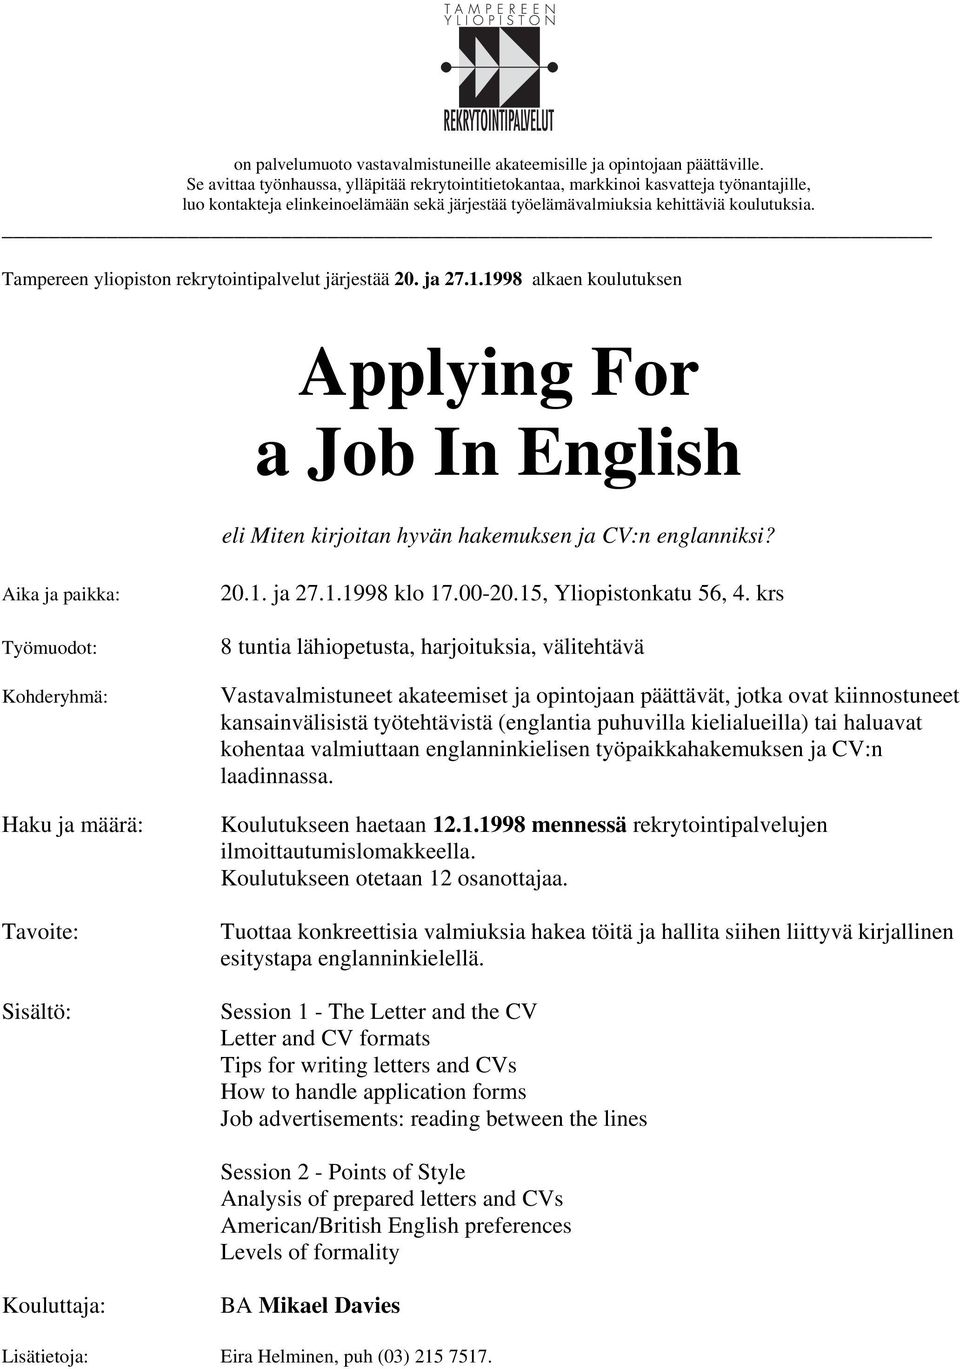 Tampereen yliopiston rekrytointipalvelut järjestää 20. ja 27.1.1998 alkaen koulutuksen Applying For a Job In English eli Miten kirjoitan hyvän hakemuksen ja CV:n englanniksi?